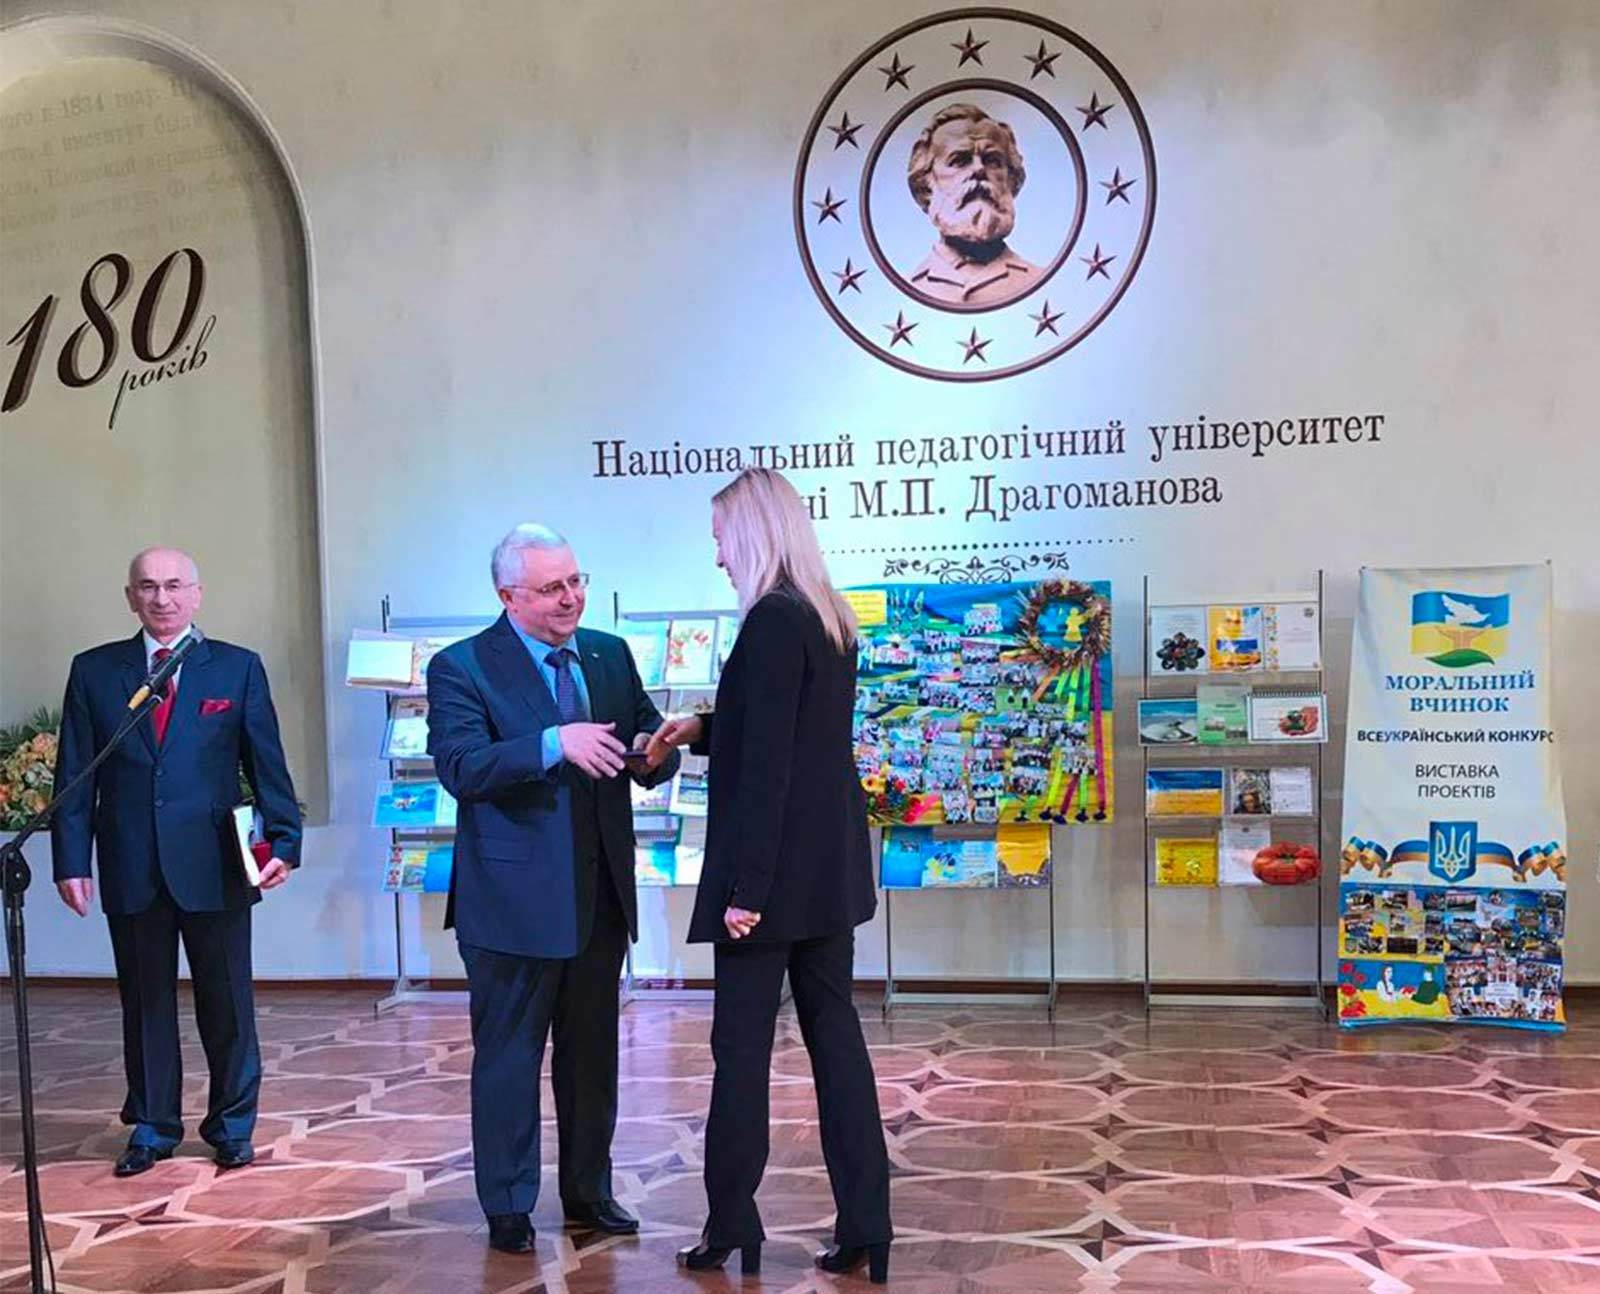 Ларису Наливайко нагородили почесною відзнакою – «Медаллю М. П. Драгоманова»